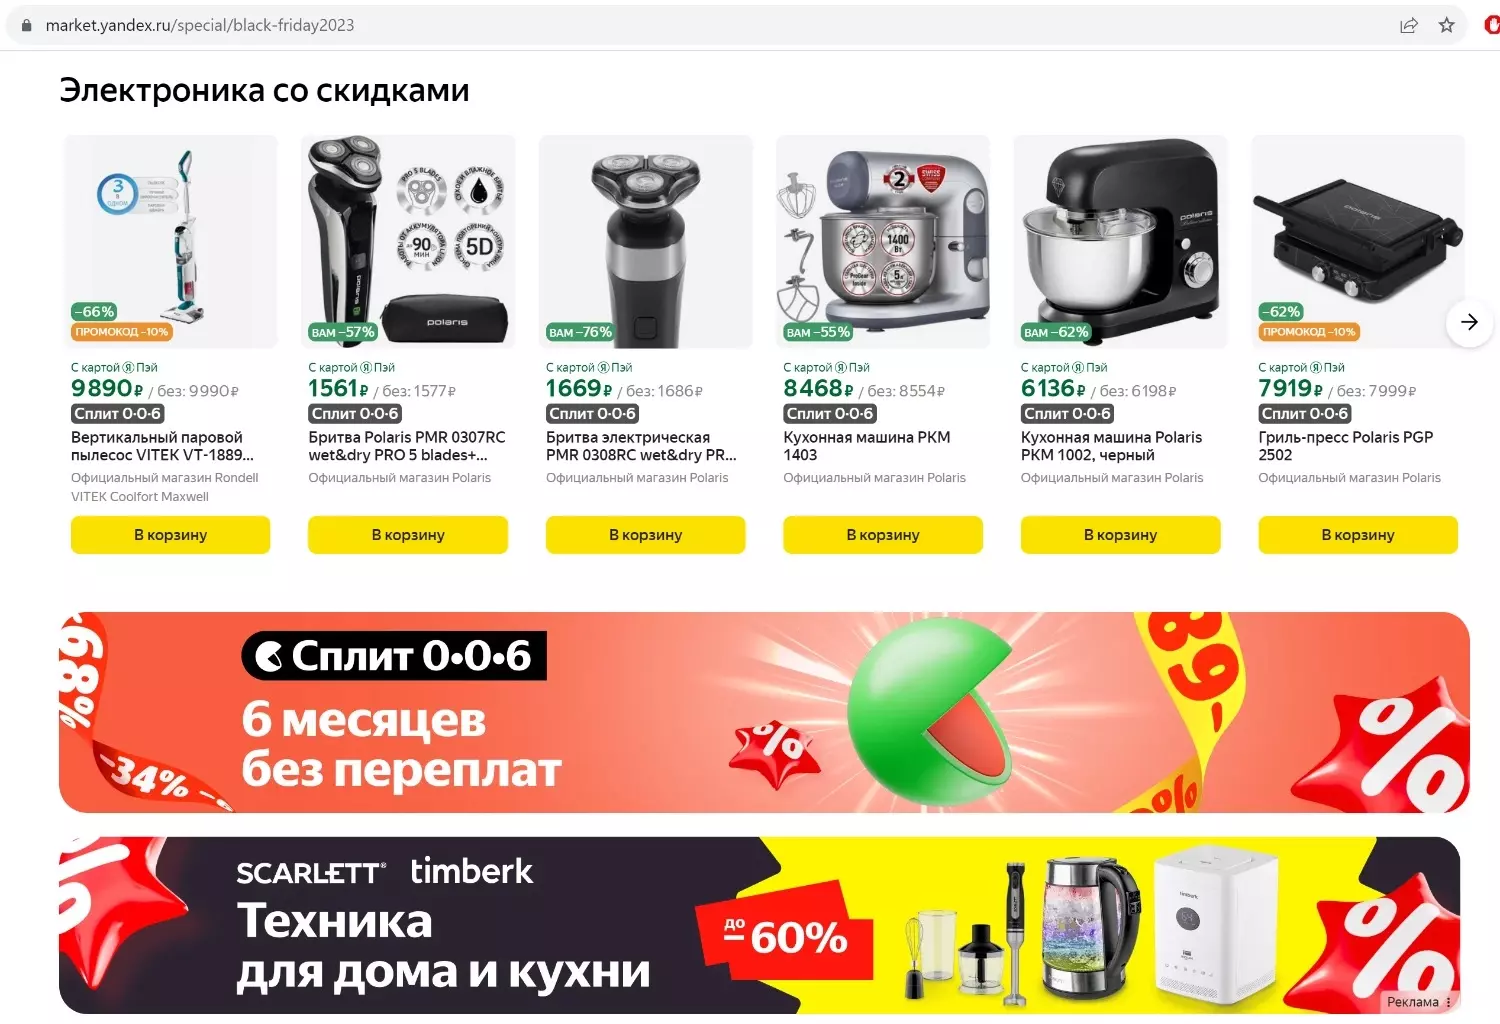 На российских маркетплейсах объявленные скидки в Чёрную пятницу достигают 90%